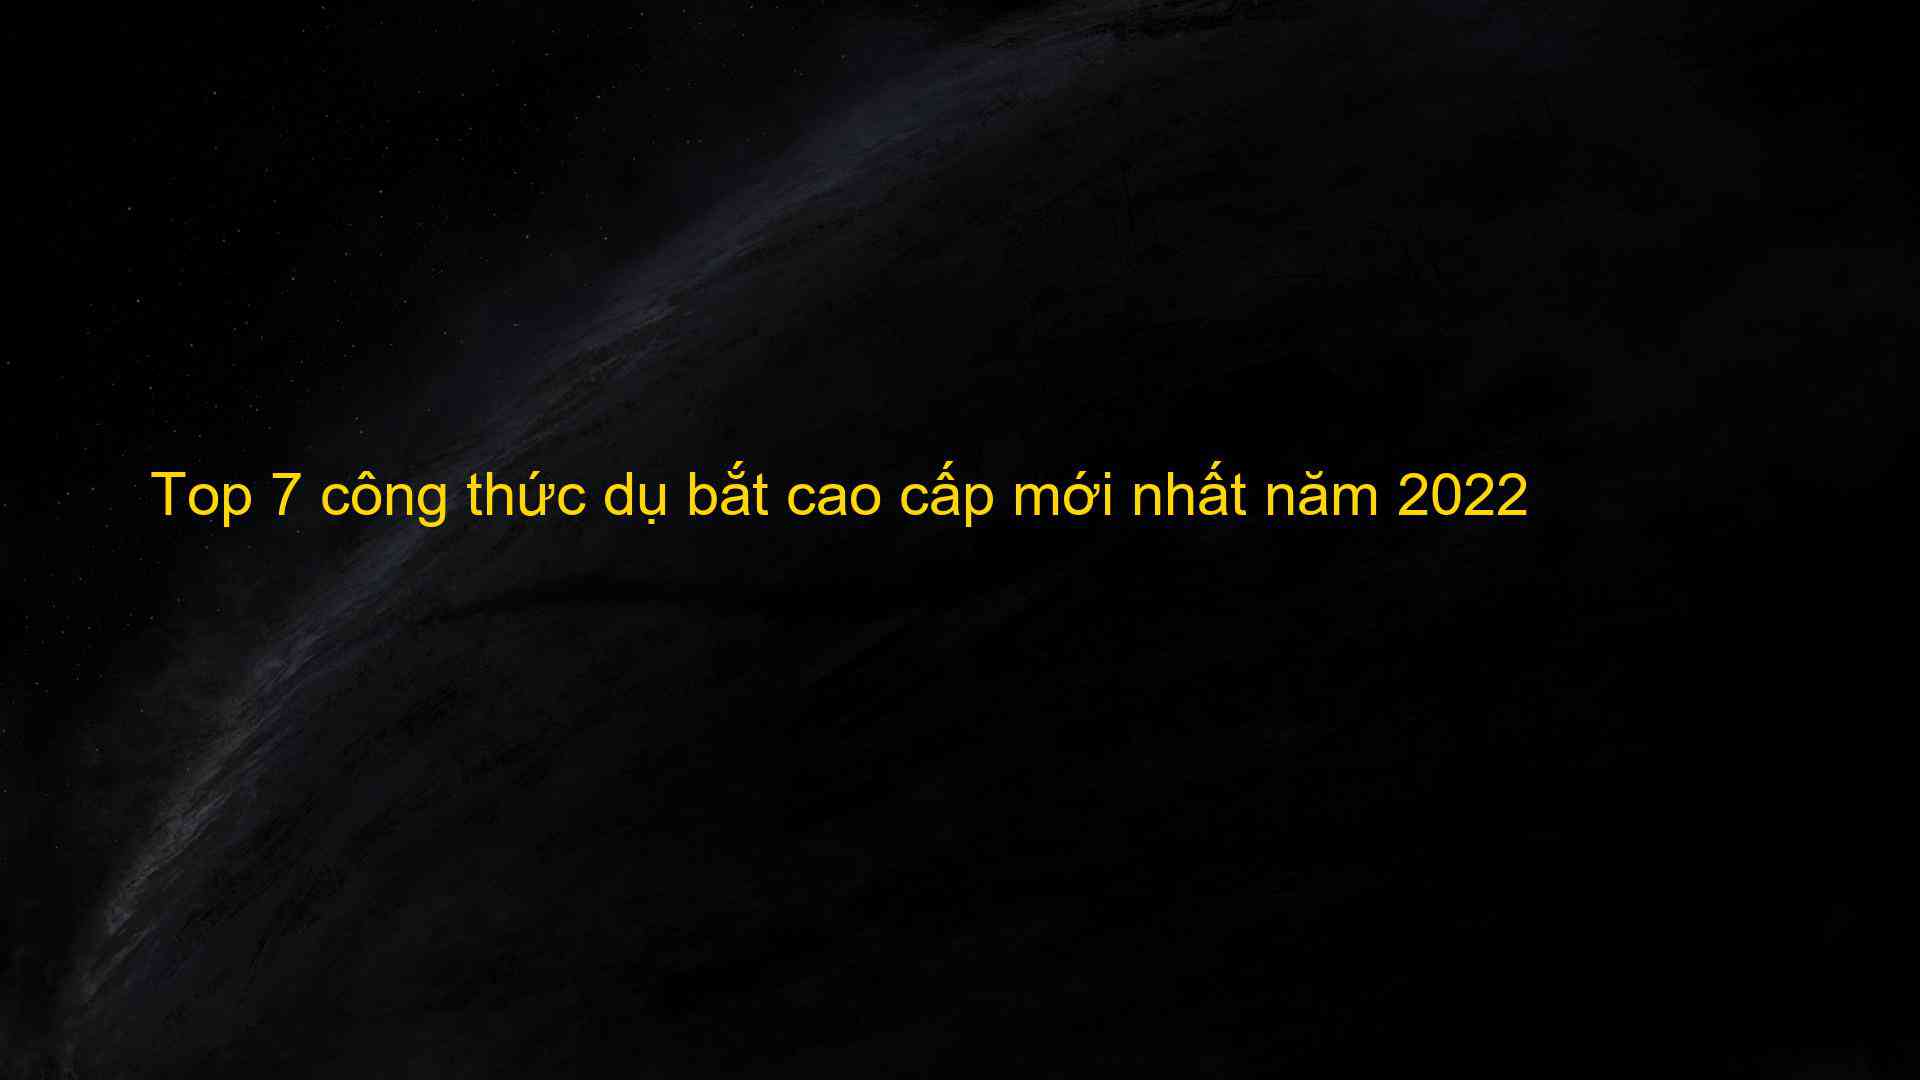 Top 7 cong thuc du bat cao cap moi nhat nam 2022 1659752102